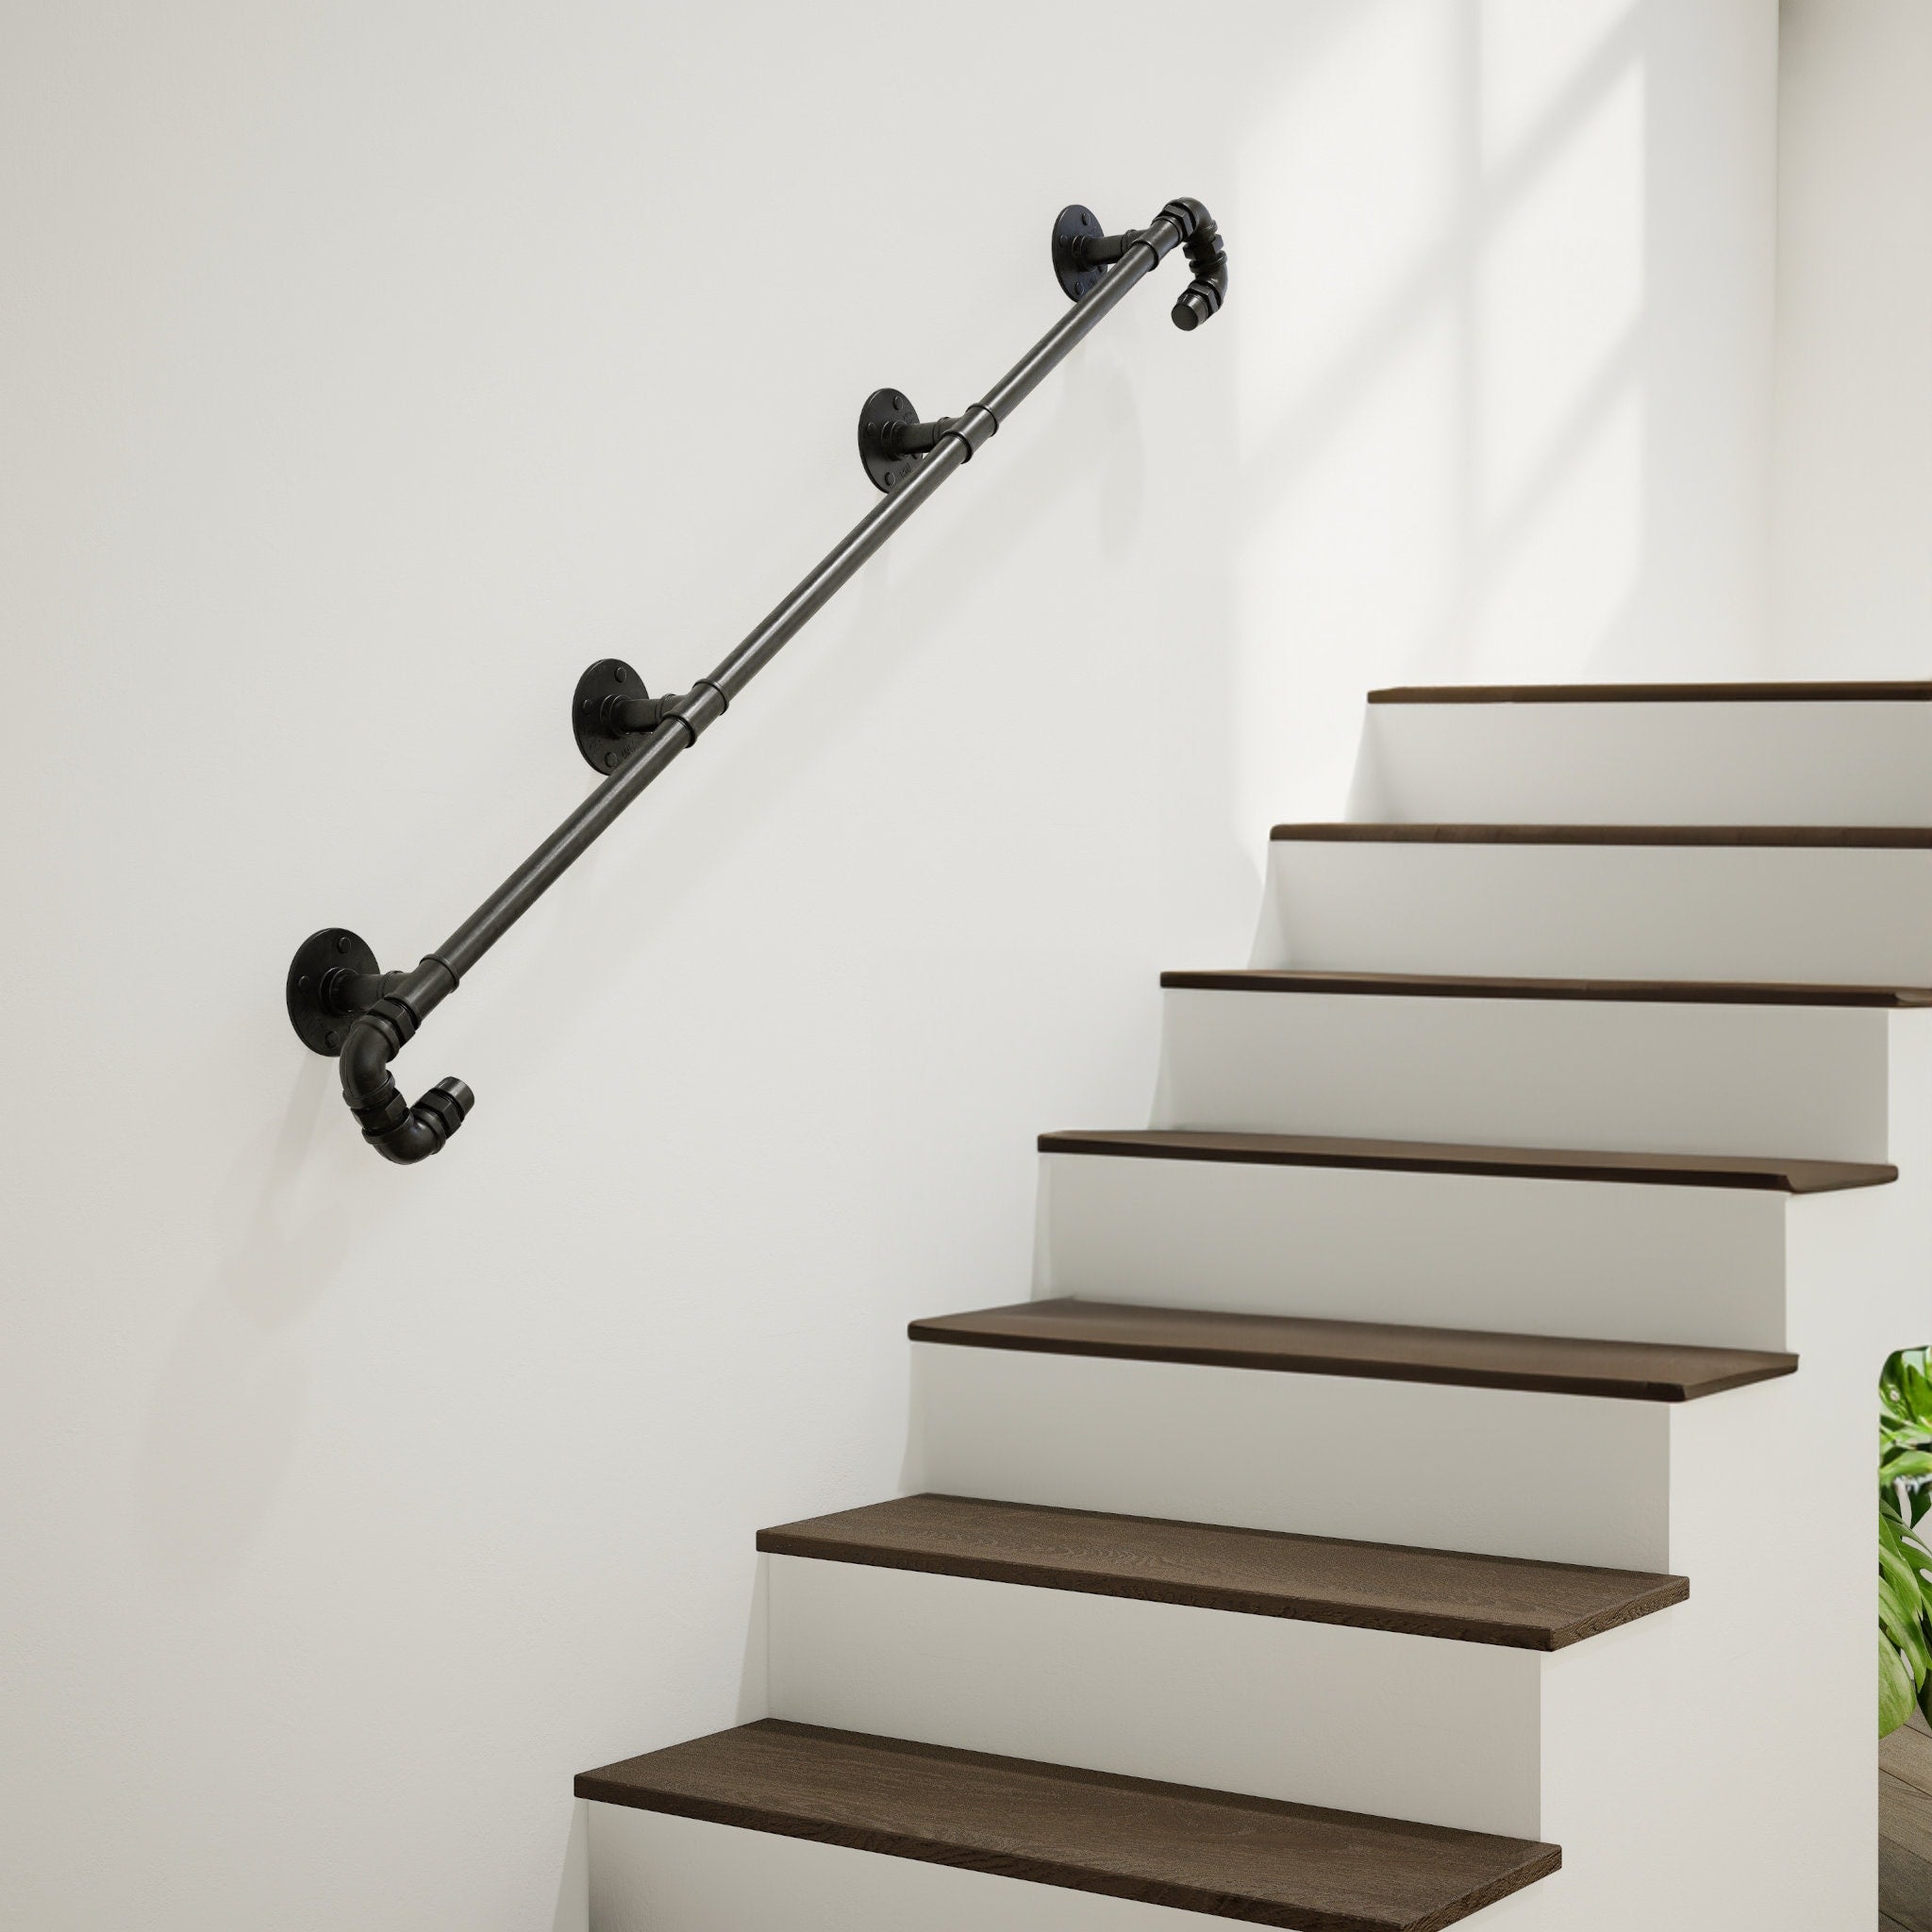  Elegant Custom-Made Staircase Banister -Staircase Rail, Stair Handrail